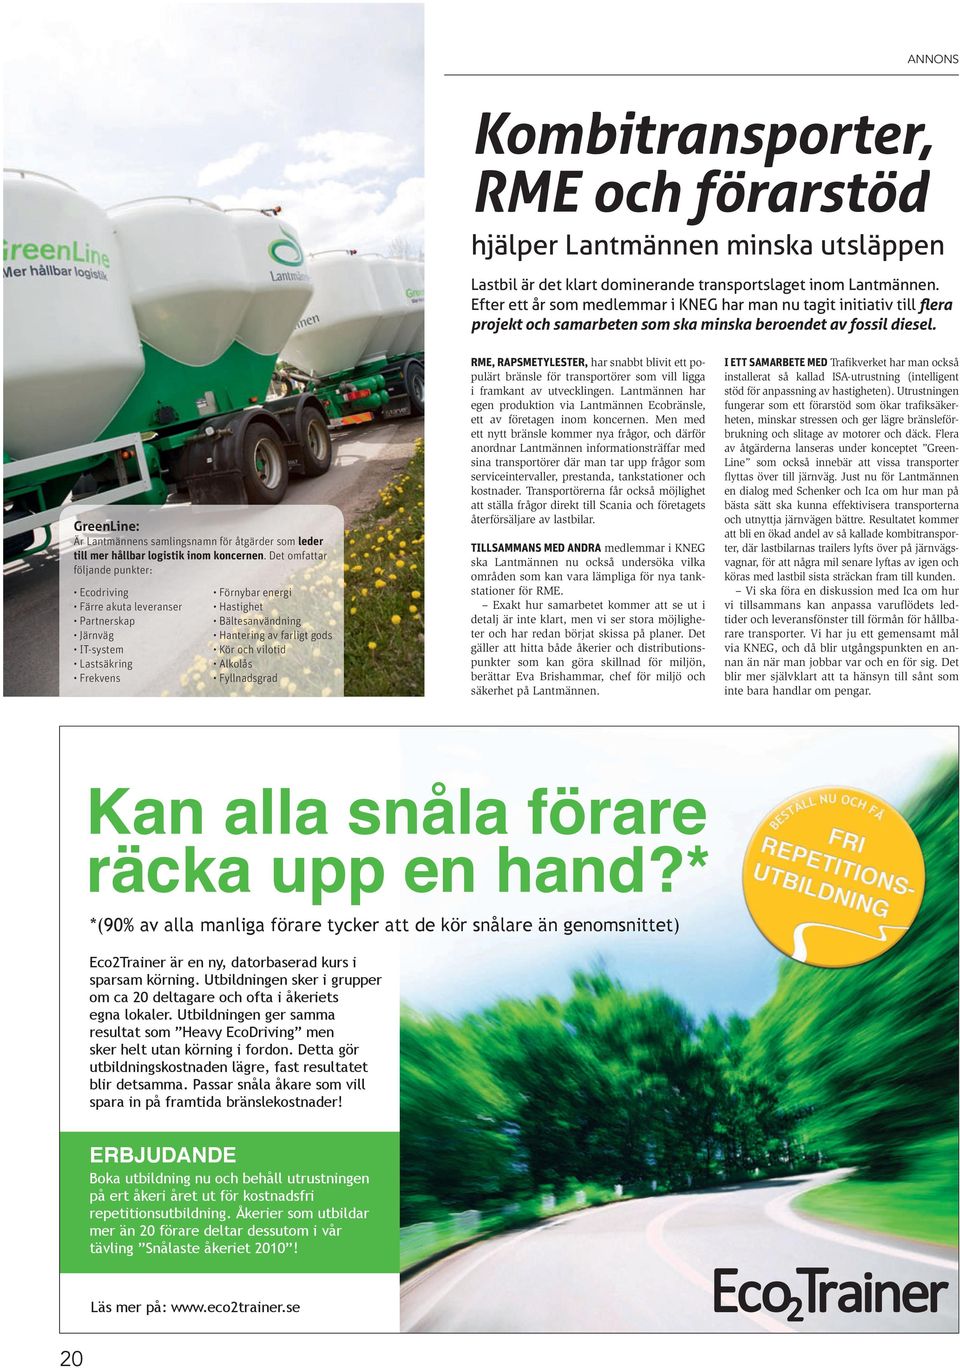 GreenLine: Är Lantmännens samlingsnamn för åtgärder som leder till mer hållbar logistik inom koncernen.